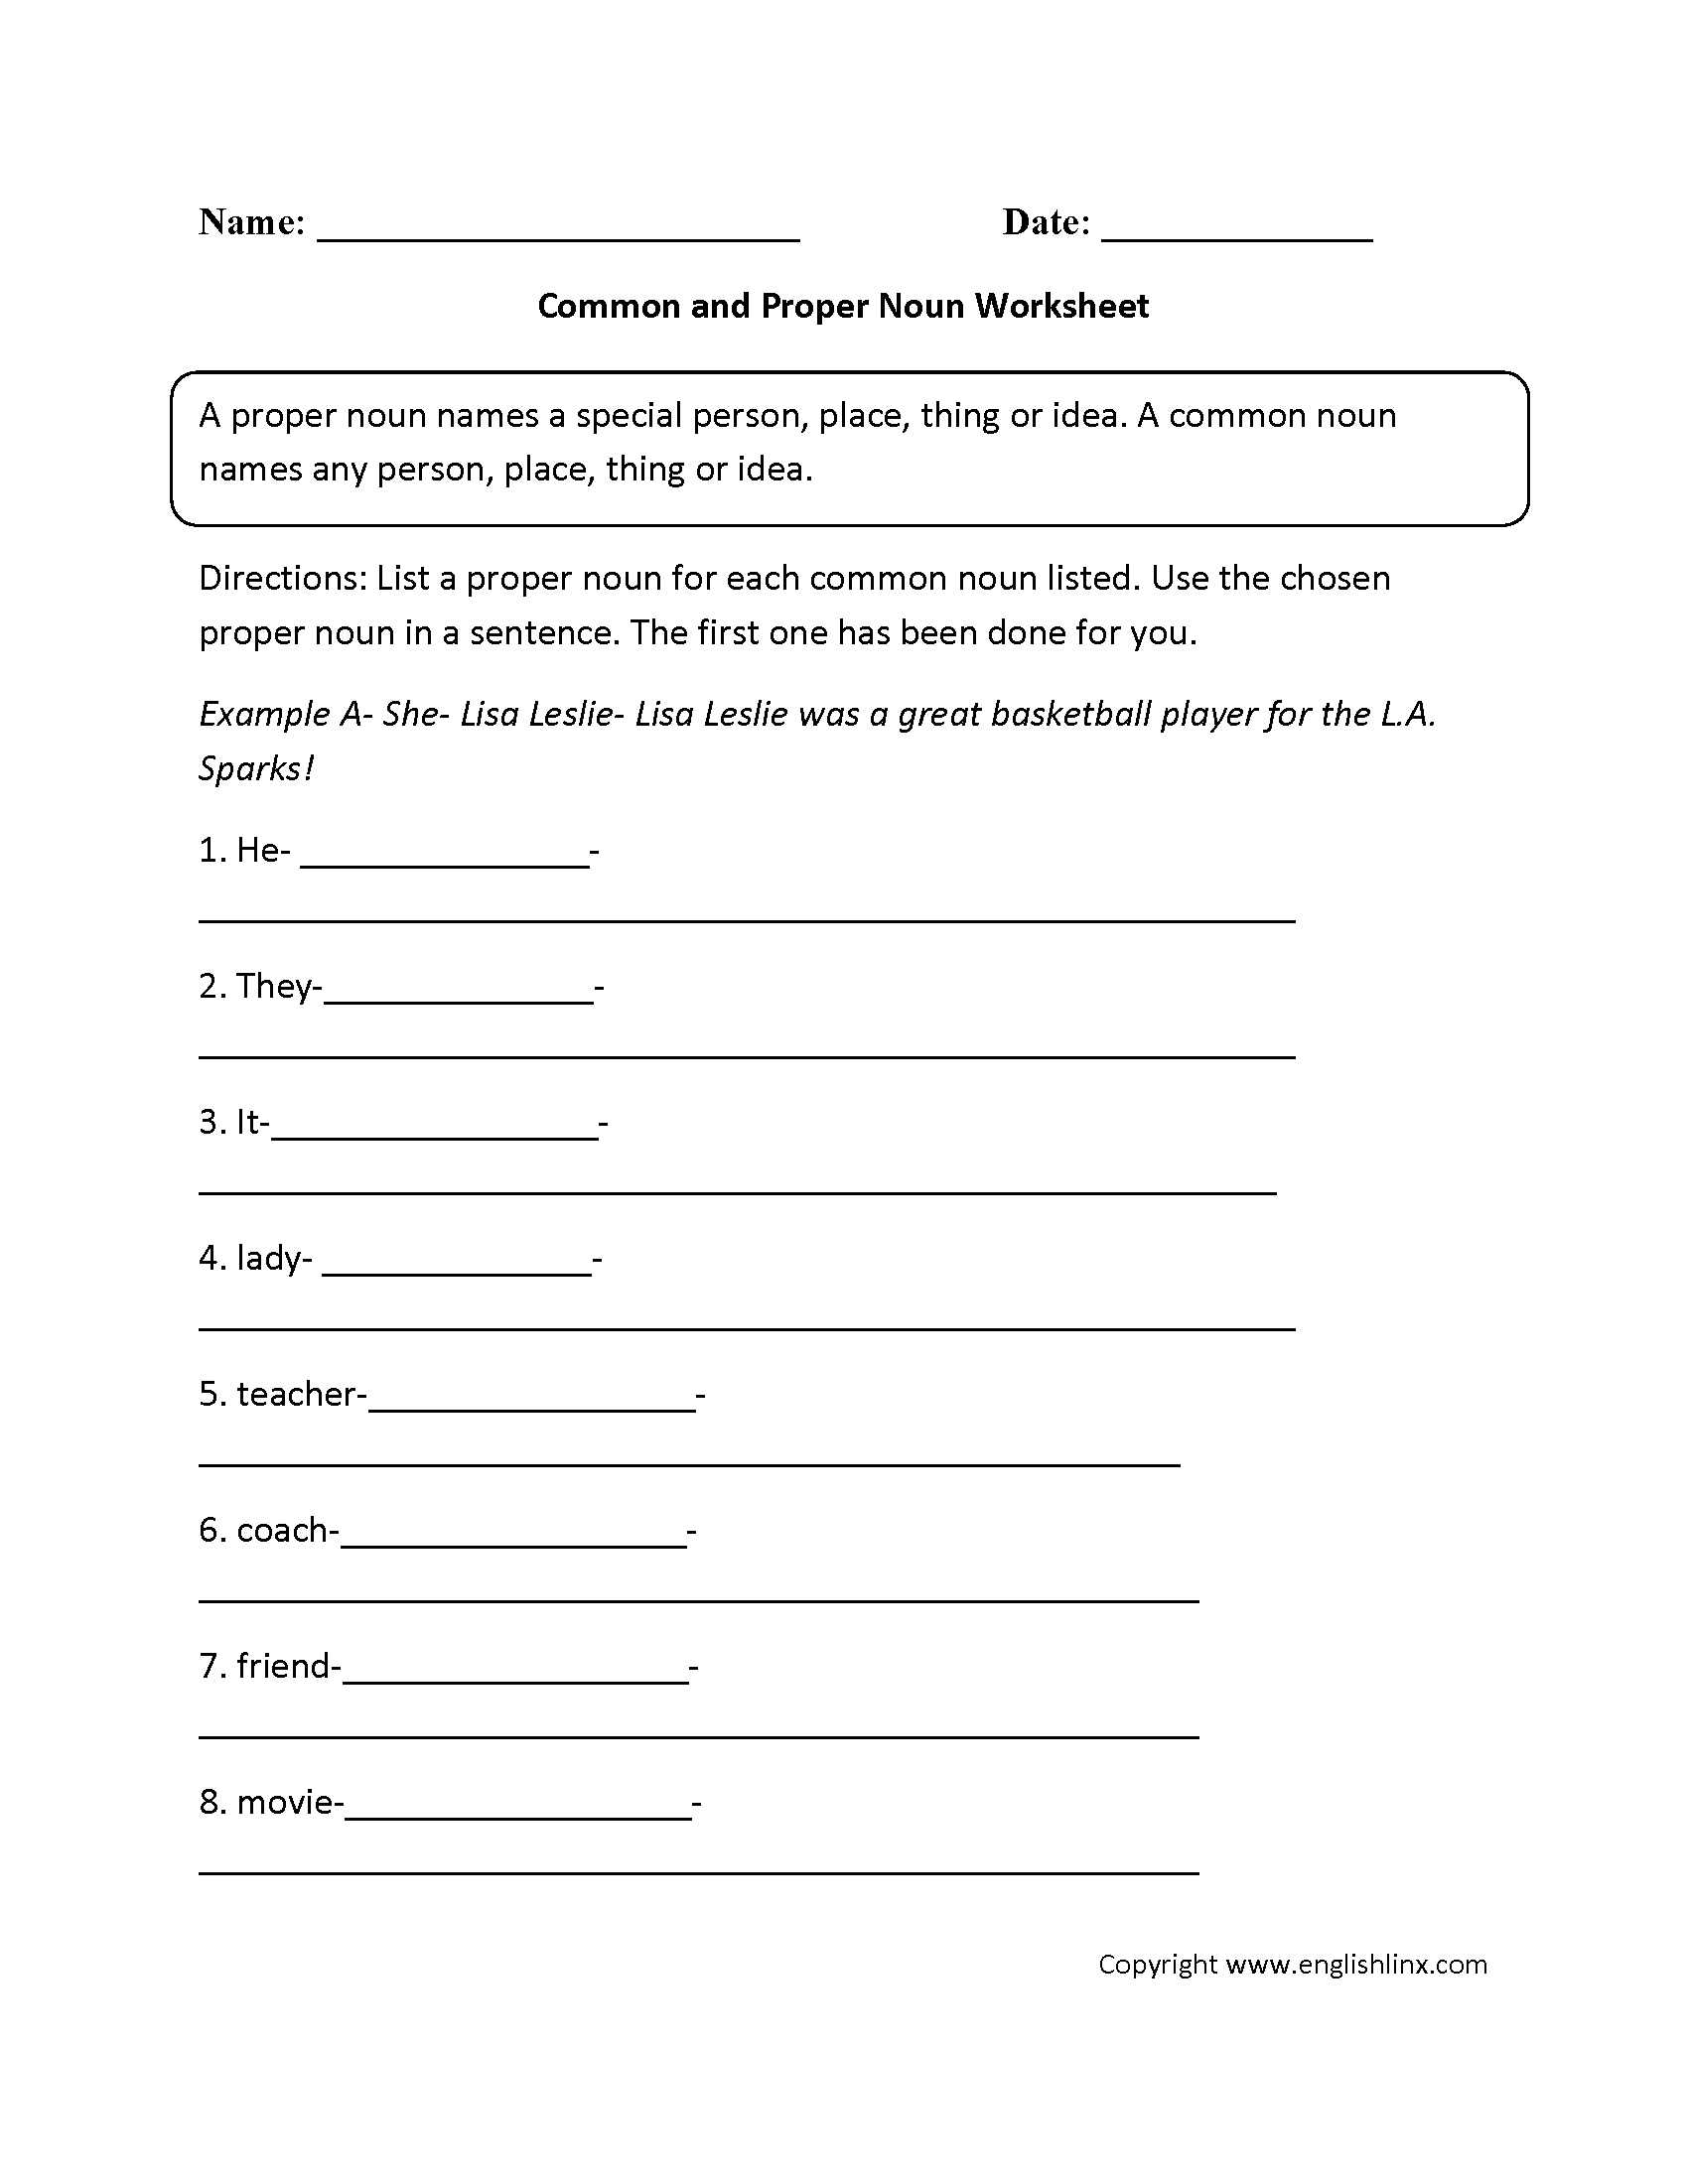 sentences-worksheets-compound-sentences-worksheets